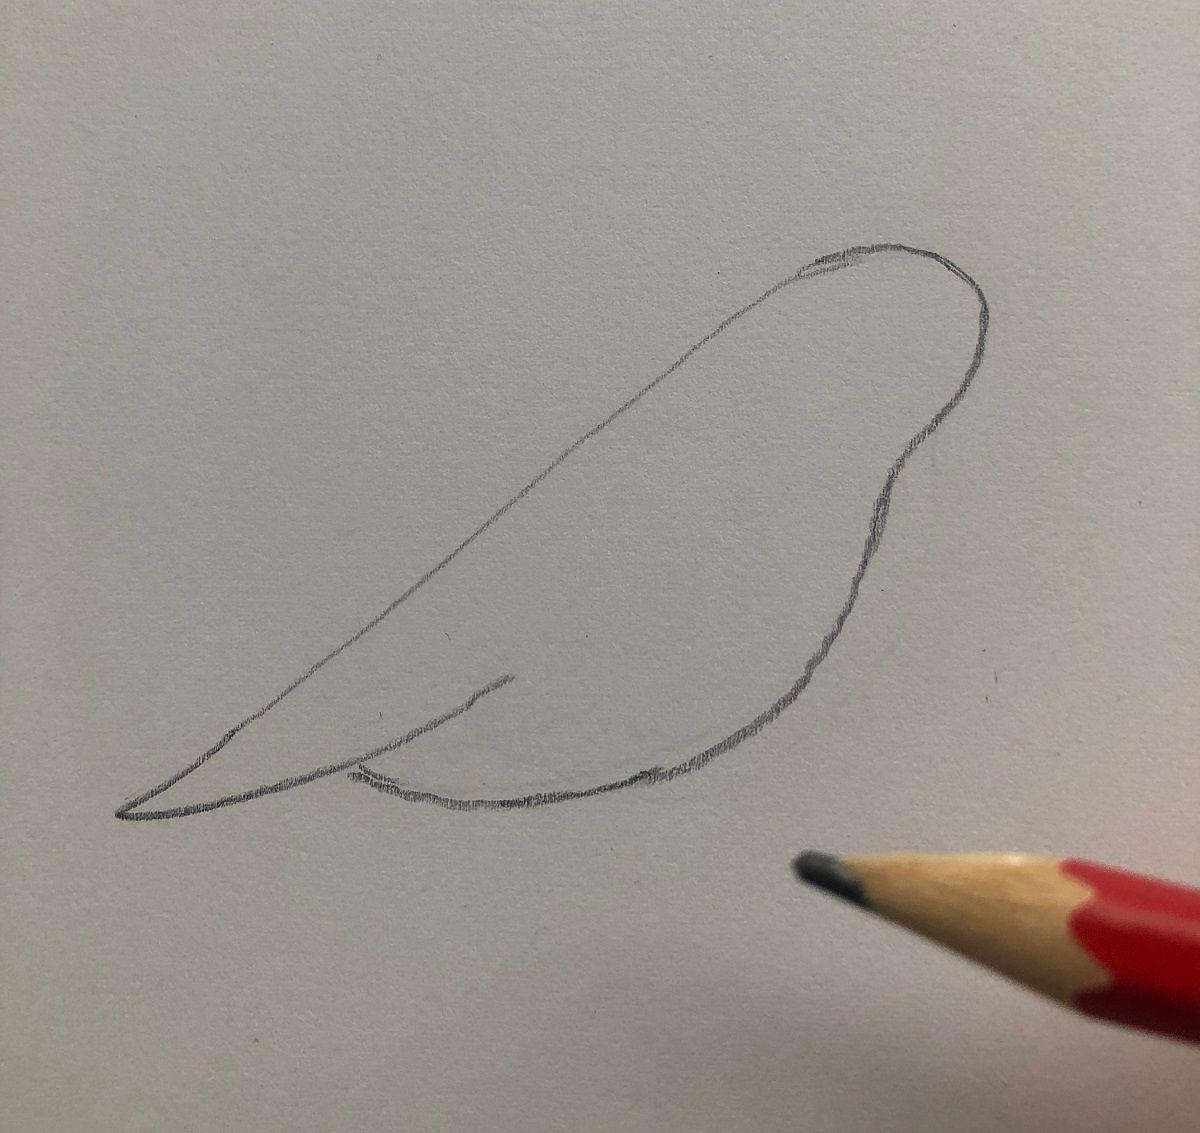 jak narysować ptaka